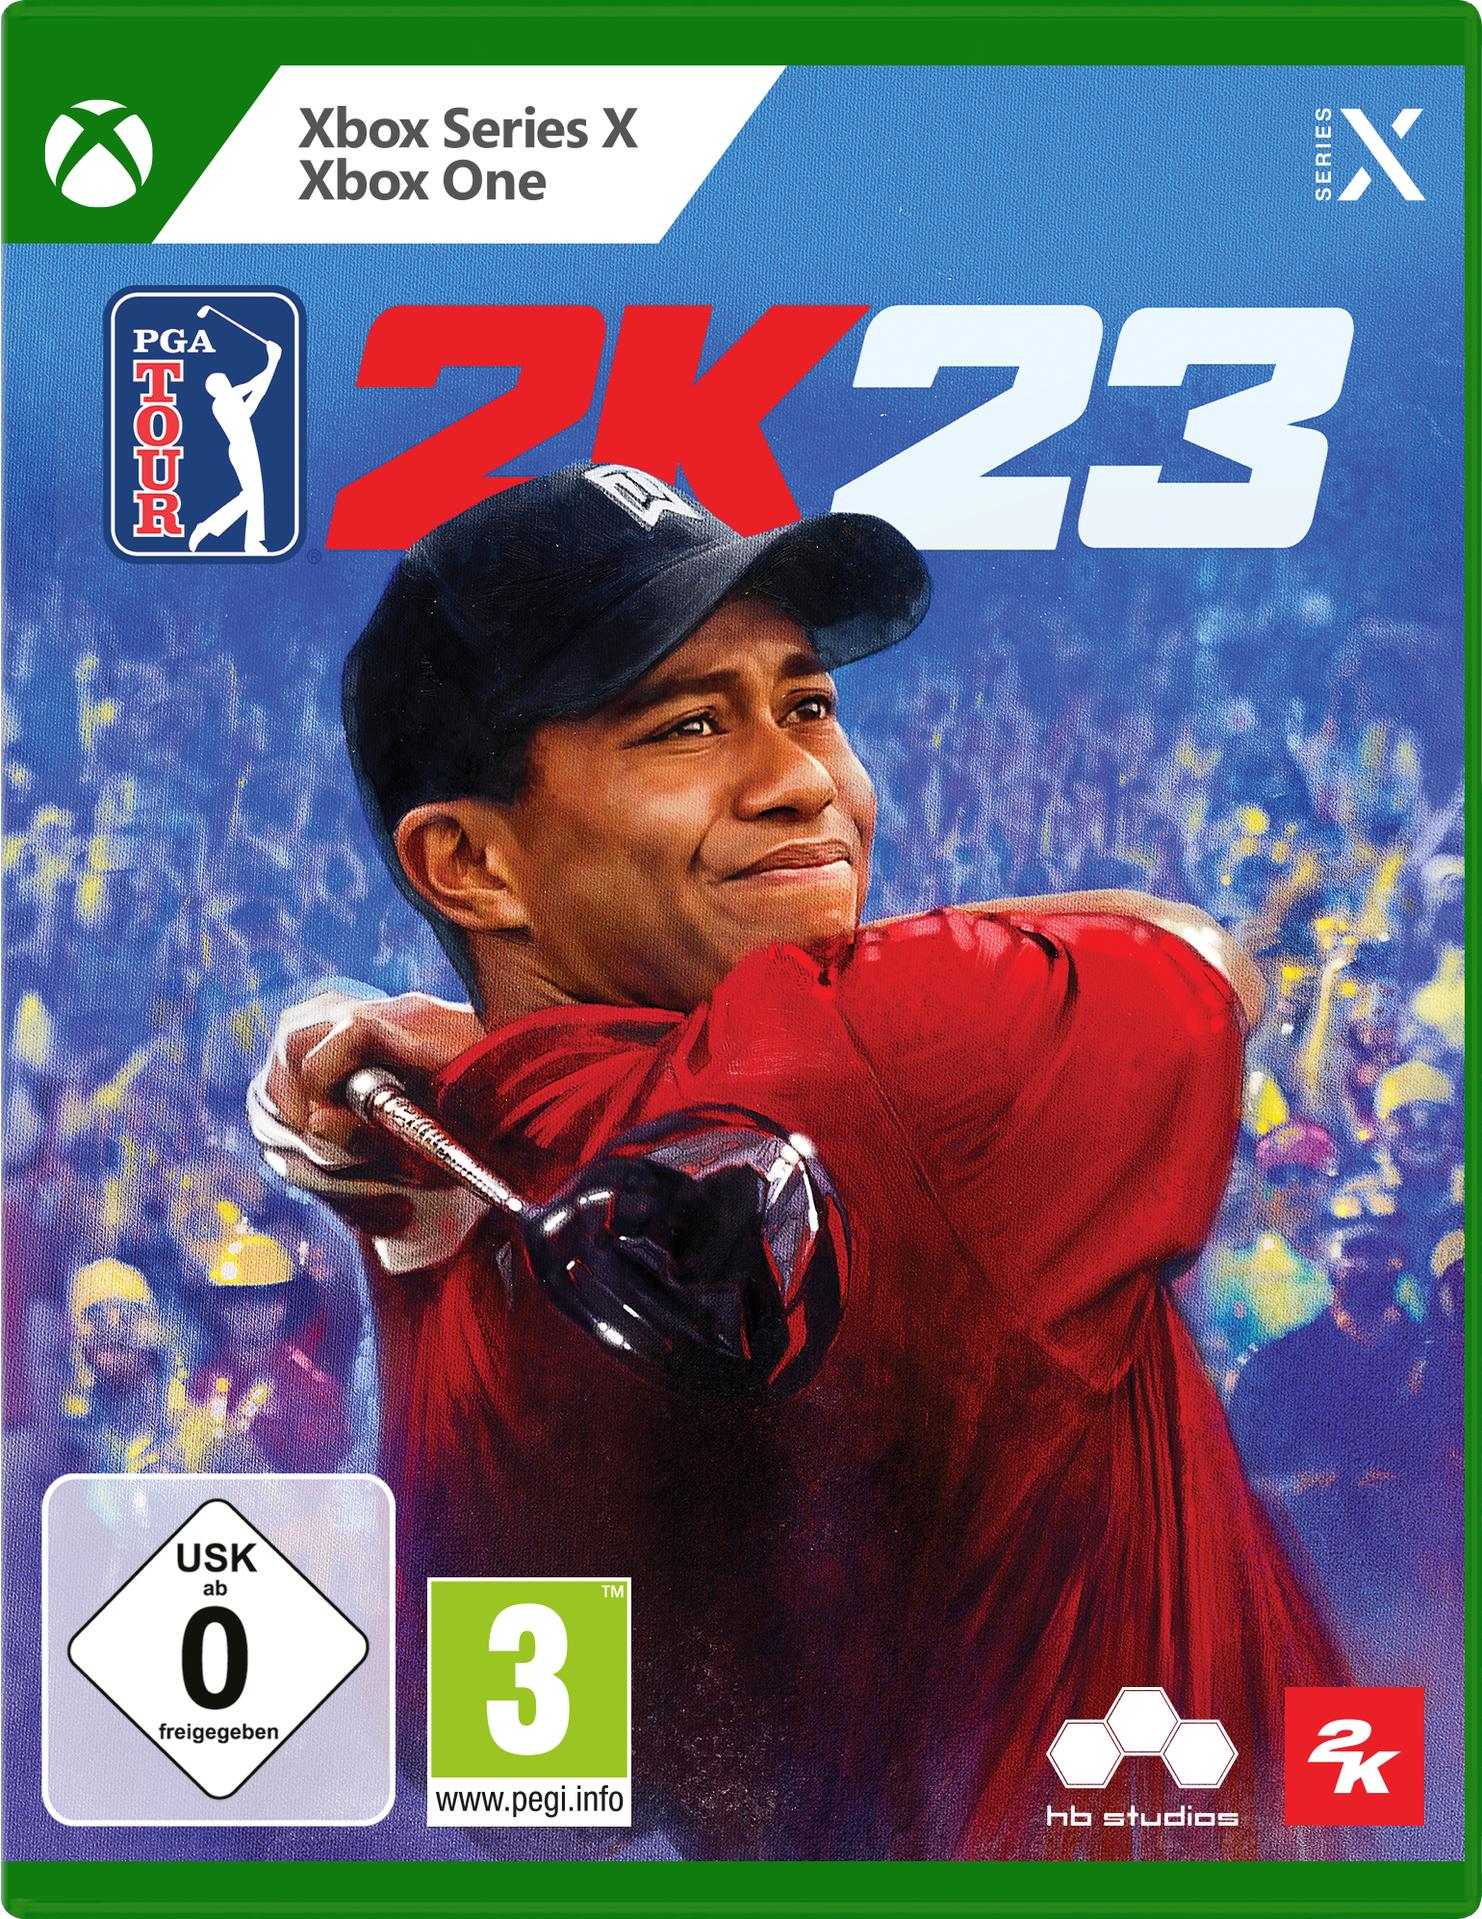 PGA Tour X] Xbox & 2K23 [Xbox One - Series